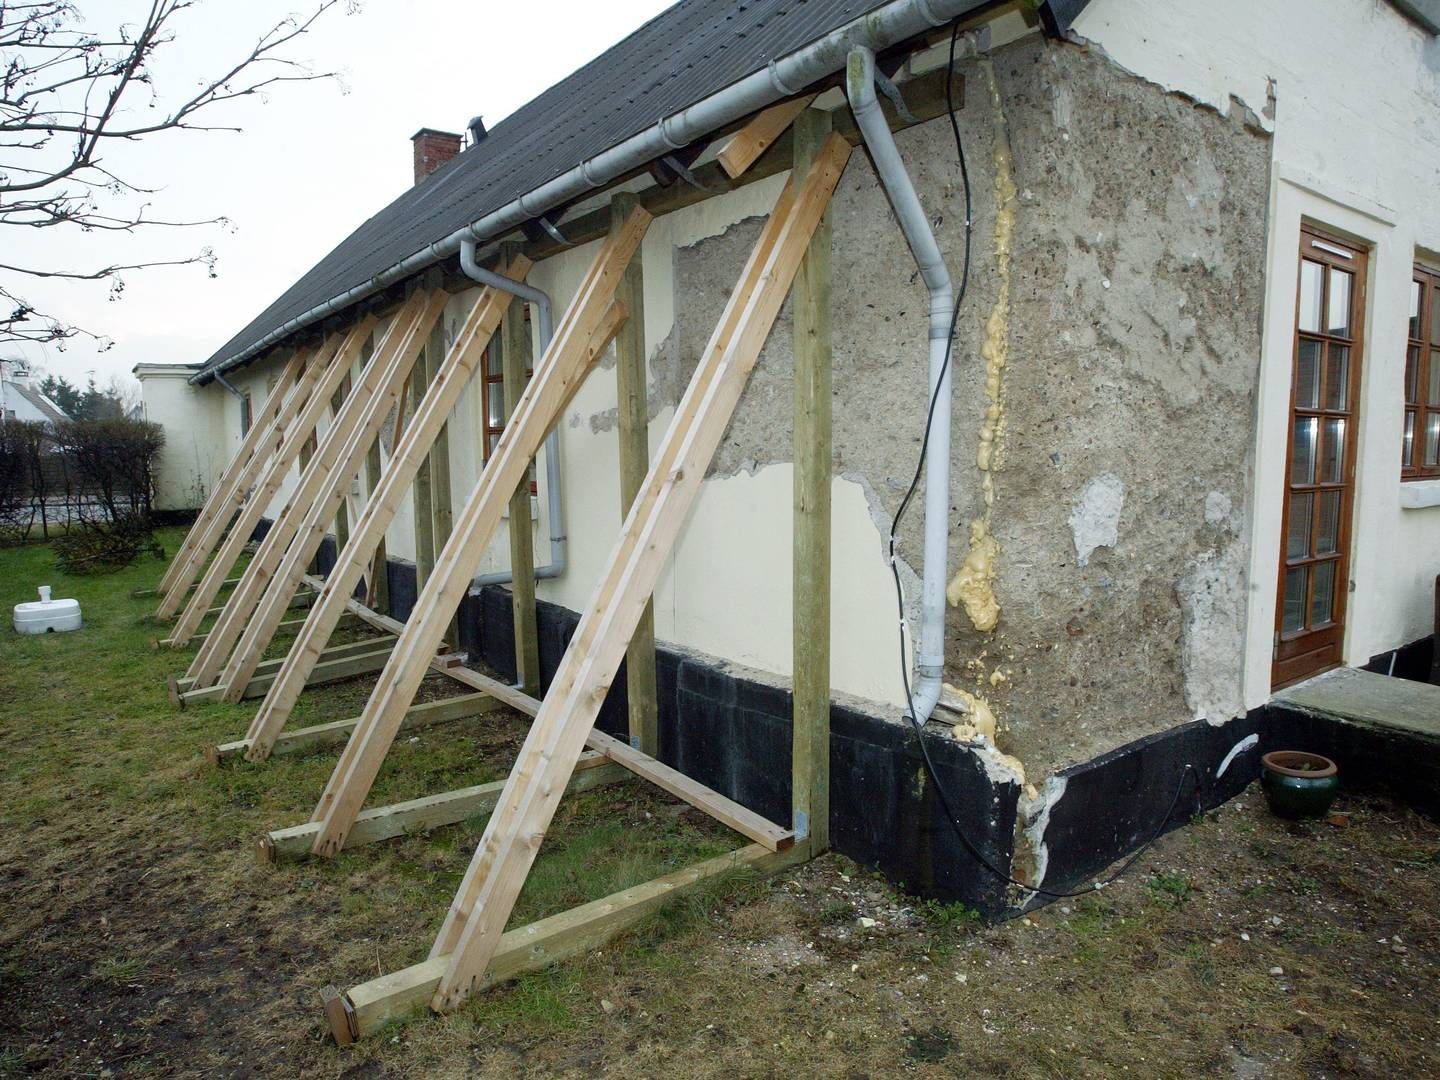 Ordfører mener, der er behov for at ændre huseftersynsordning. | Foto: Thomas Sjørup